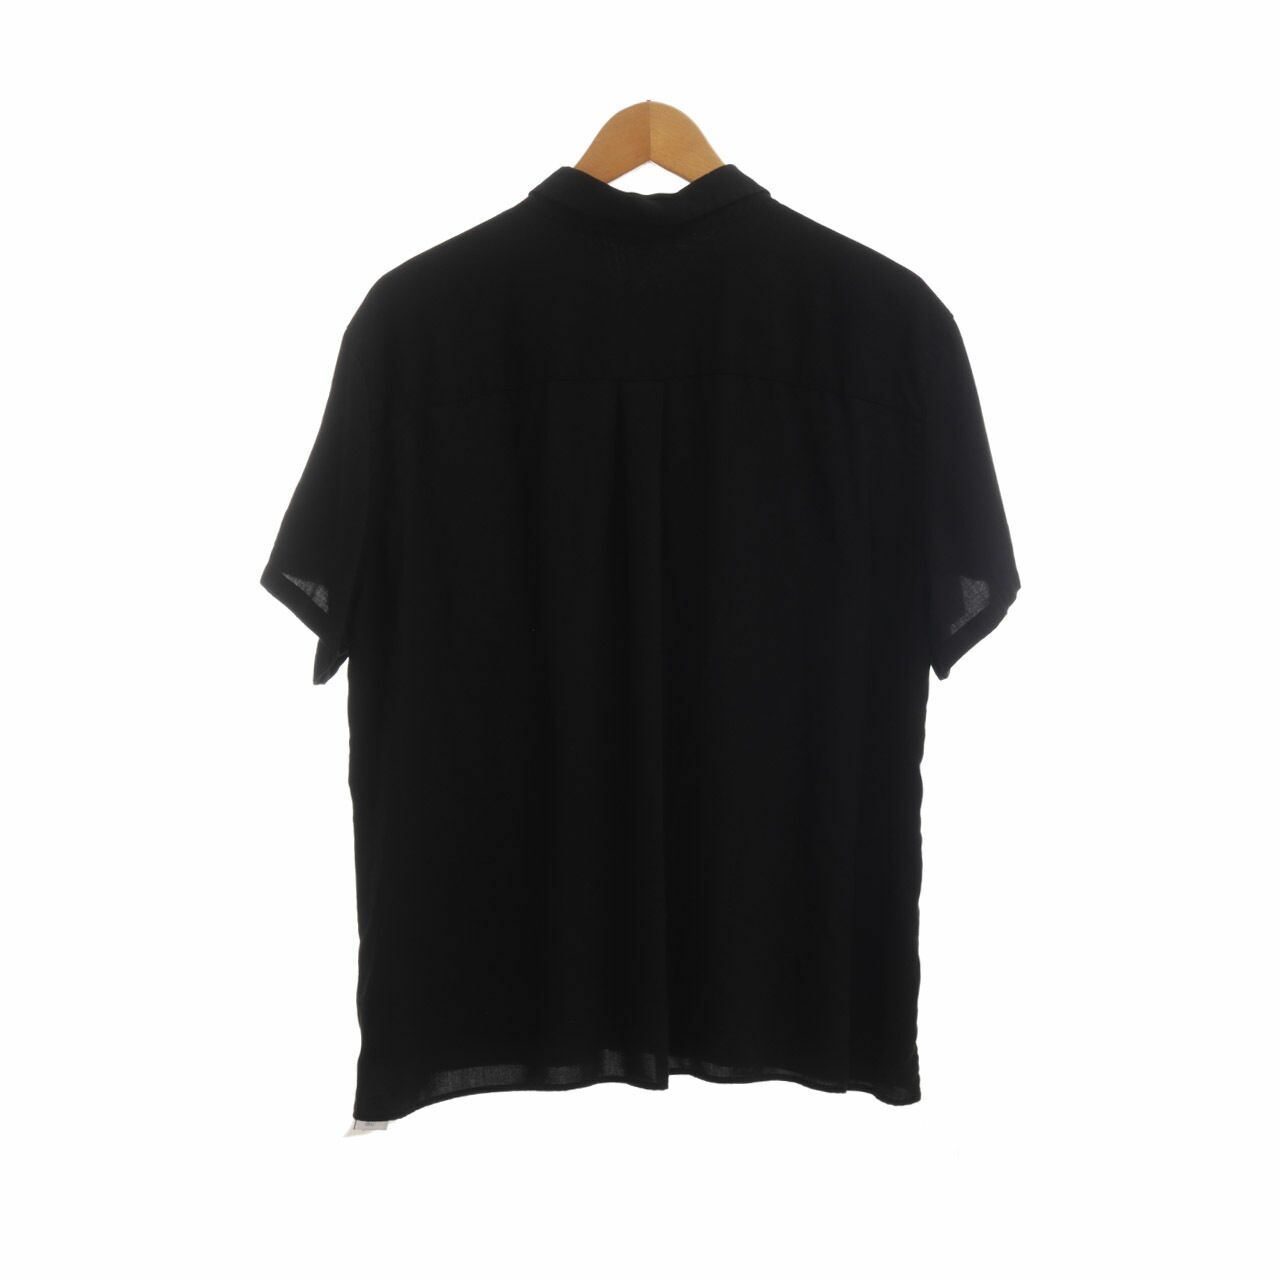 UNIQLO Black Shirt